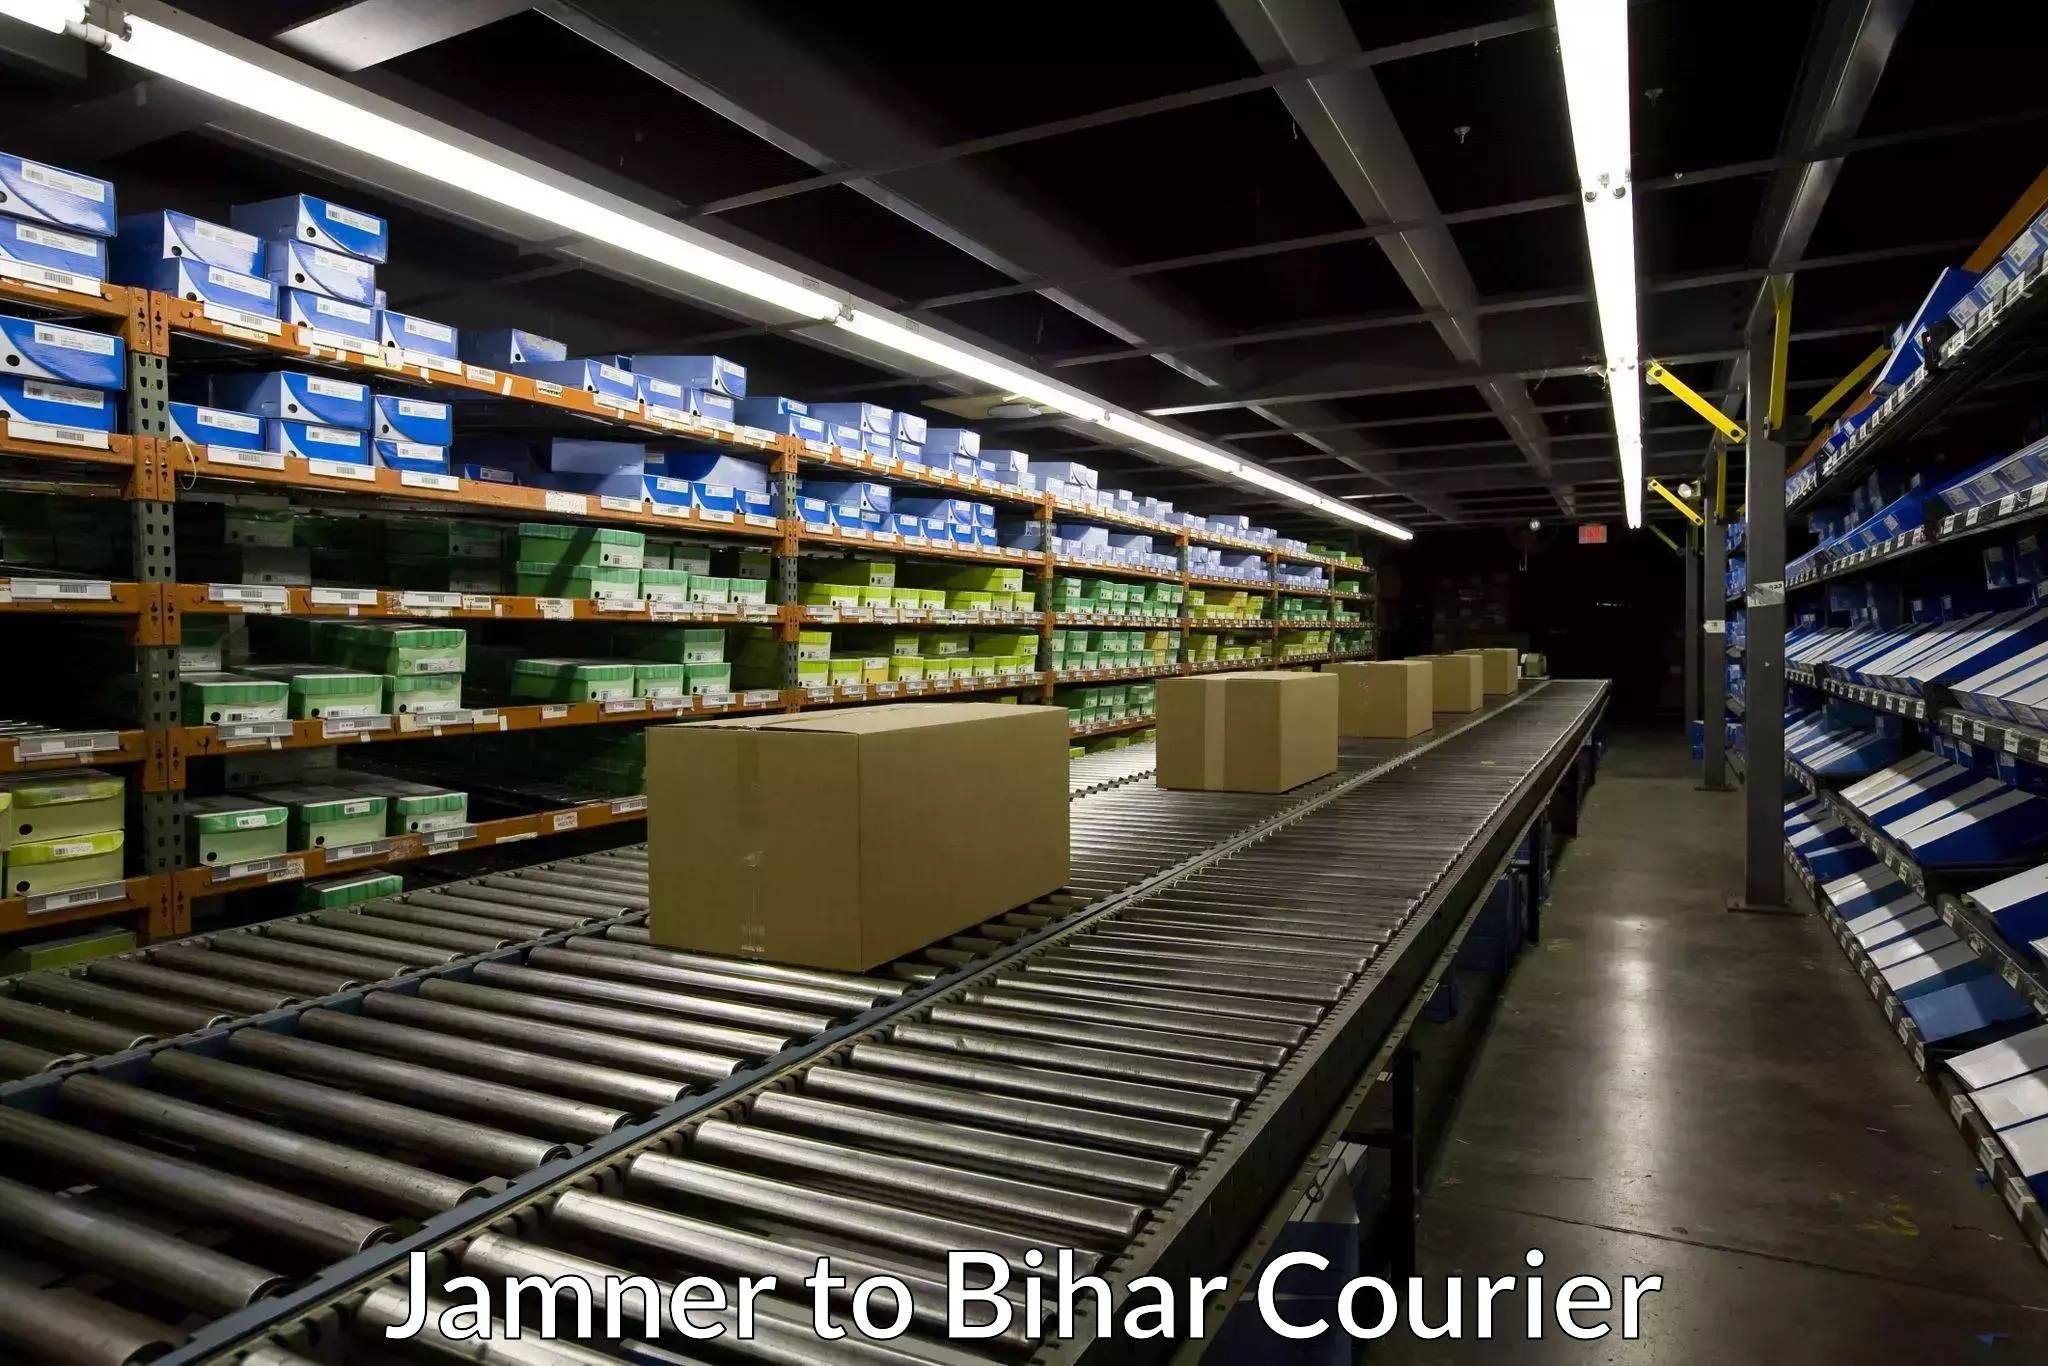 High-priority parcel service Jamner to Bihar